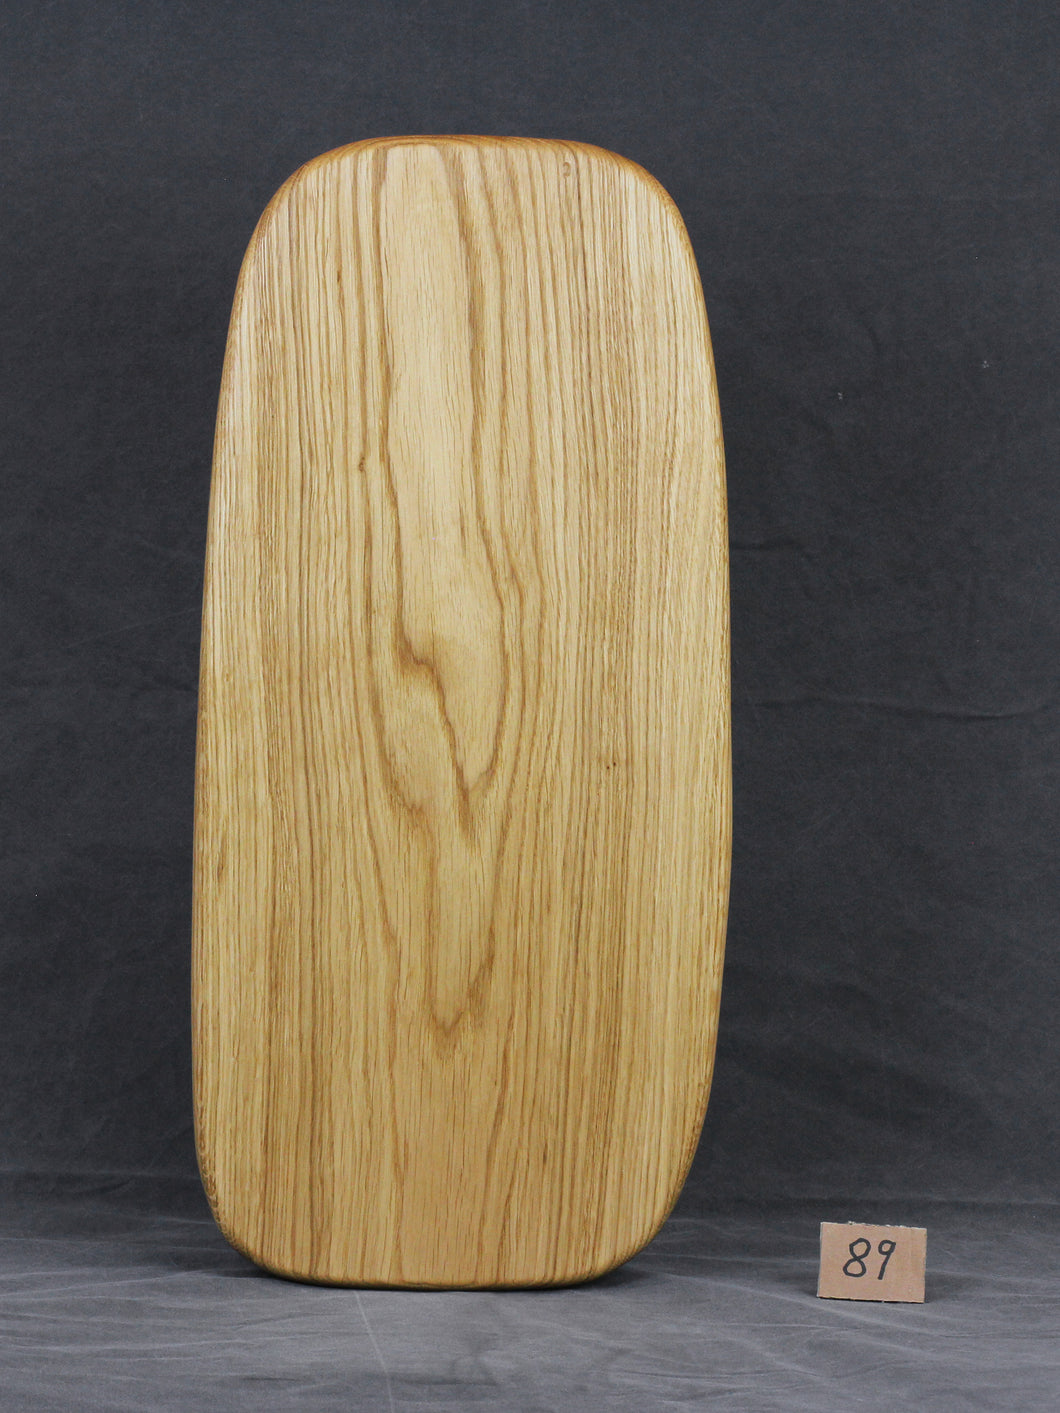 Brotzeitbrett, Servierbrett, Schneidebrett, Cuttingboard, Charcuterie Board. No. 89 - ca. 60 cm. Aus einem Stück Eiche - handgefertigt.